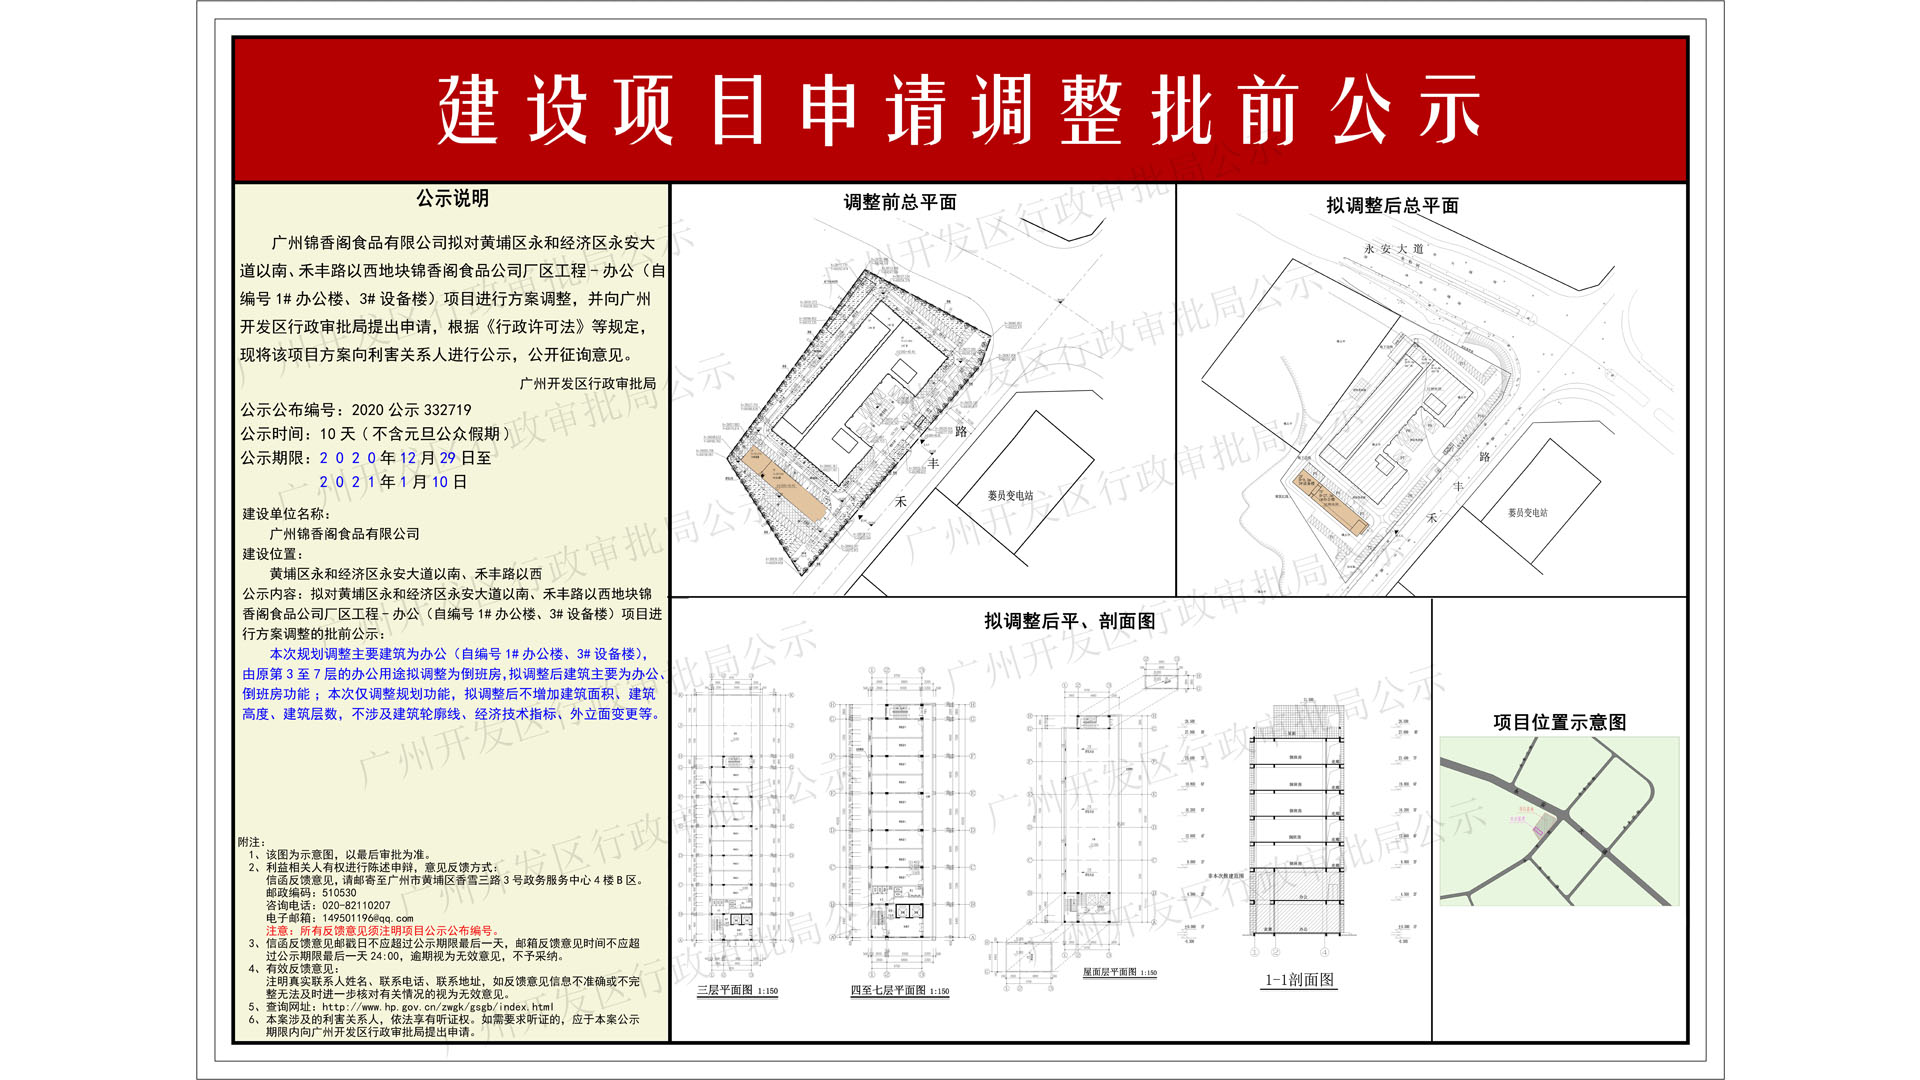 2020公示332719（一楼：1920x1080）水印--广州锦香阁食品有限公司.jpg